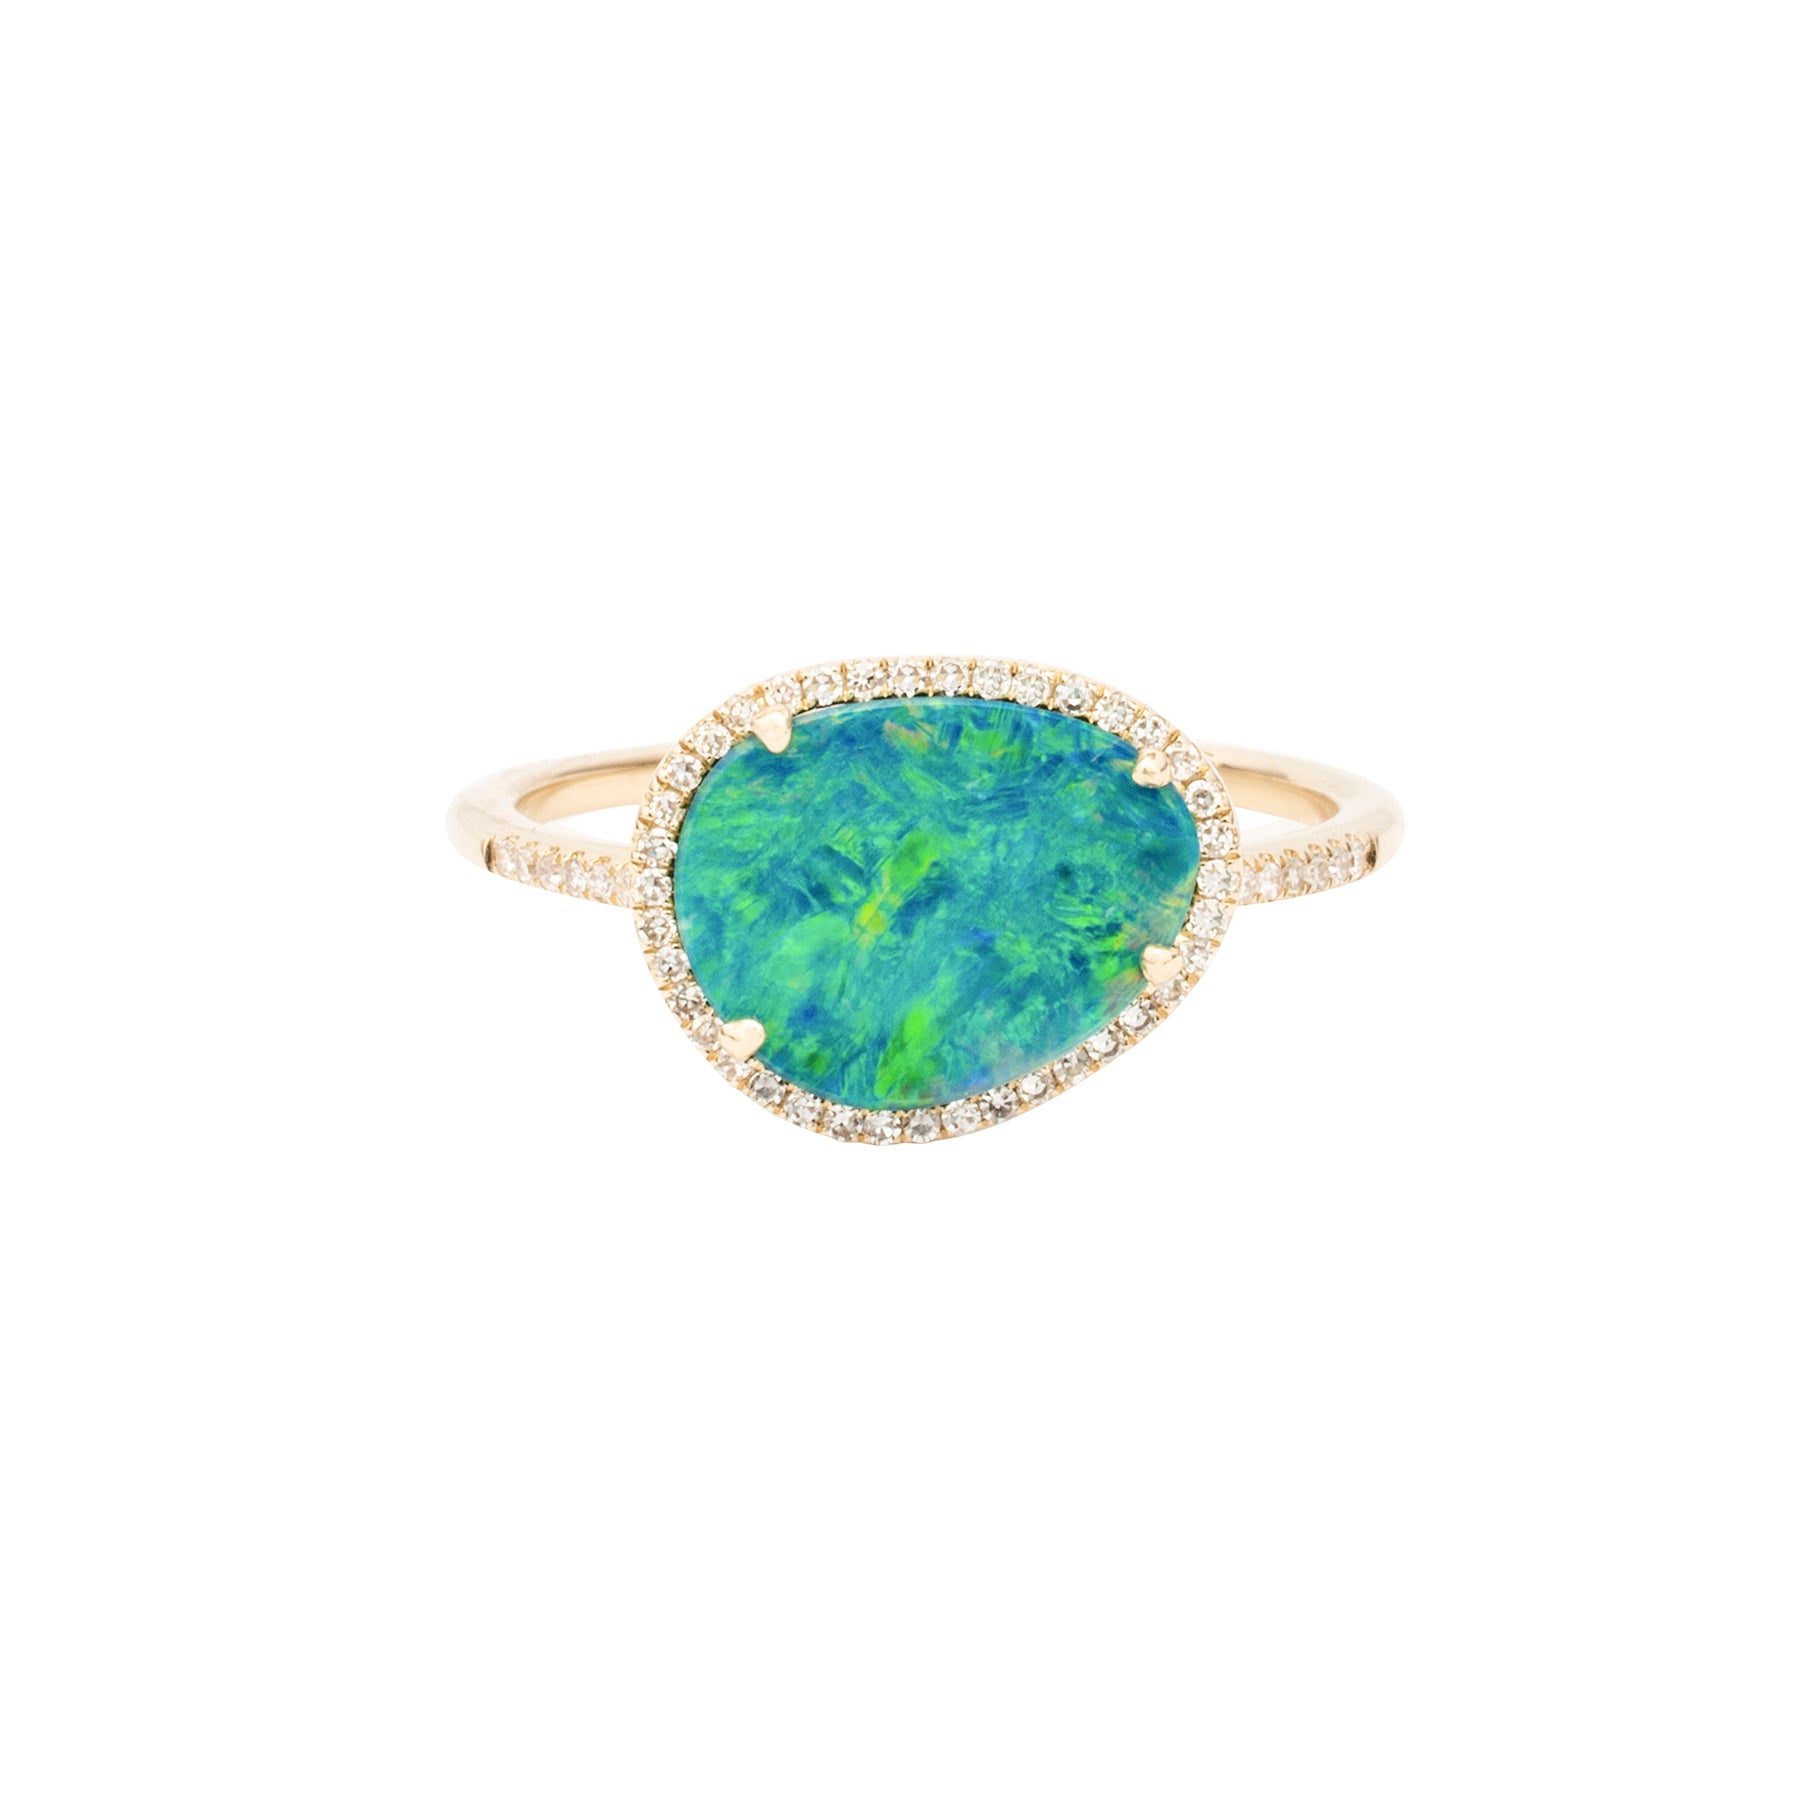 Organic Opal Ring With Diamonds - Nina Segal Jewelry